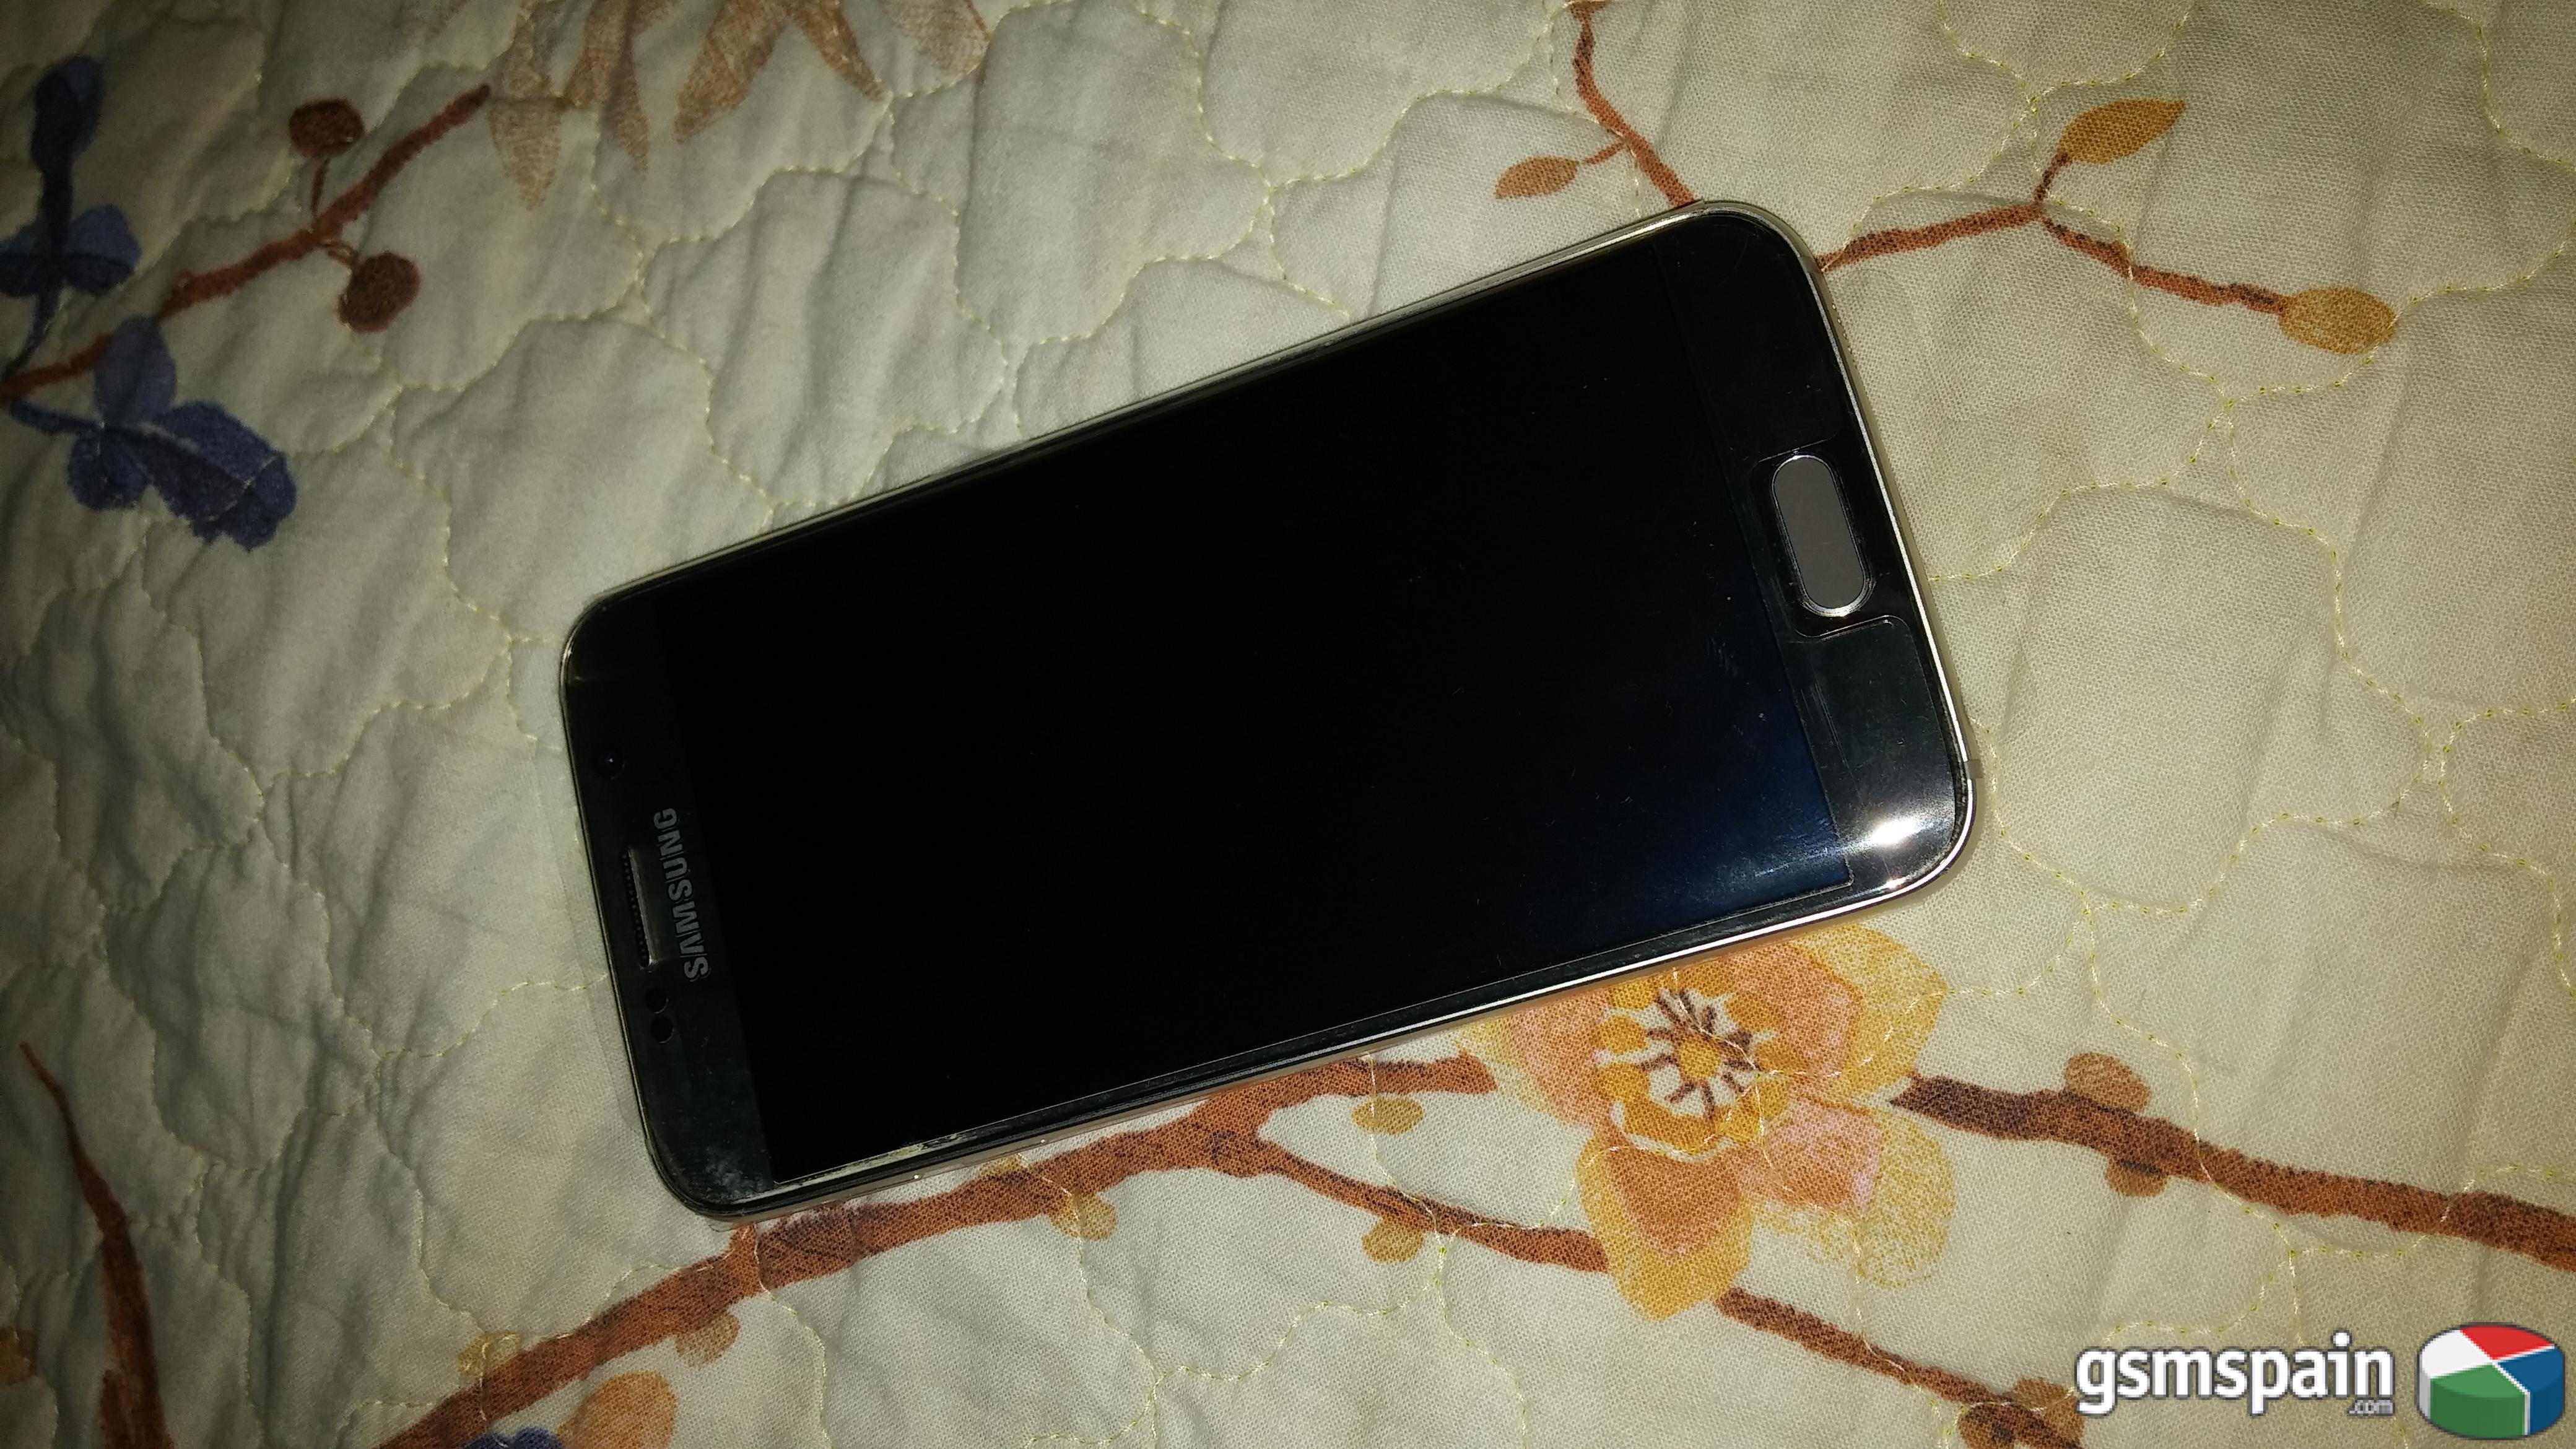 [VENDO] Samsung galaxy s6 libre, 32gb dorado. Factura